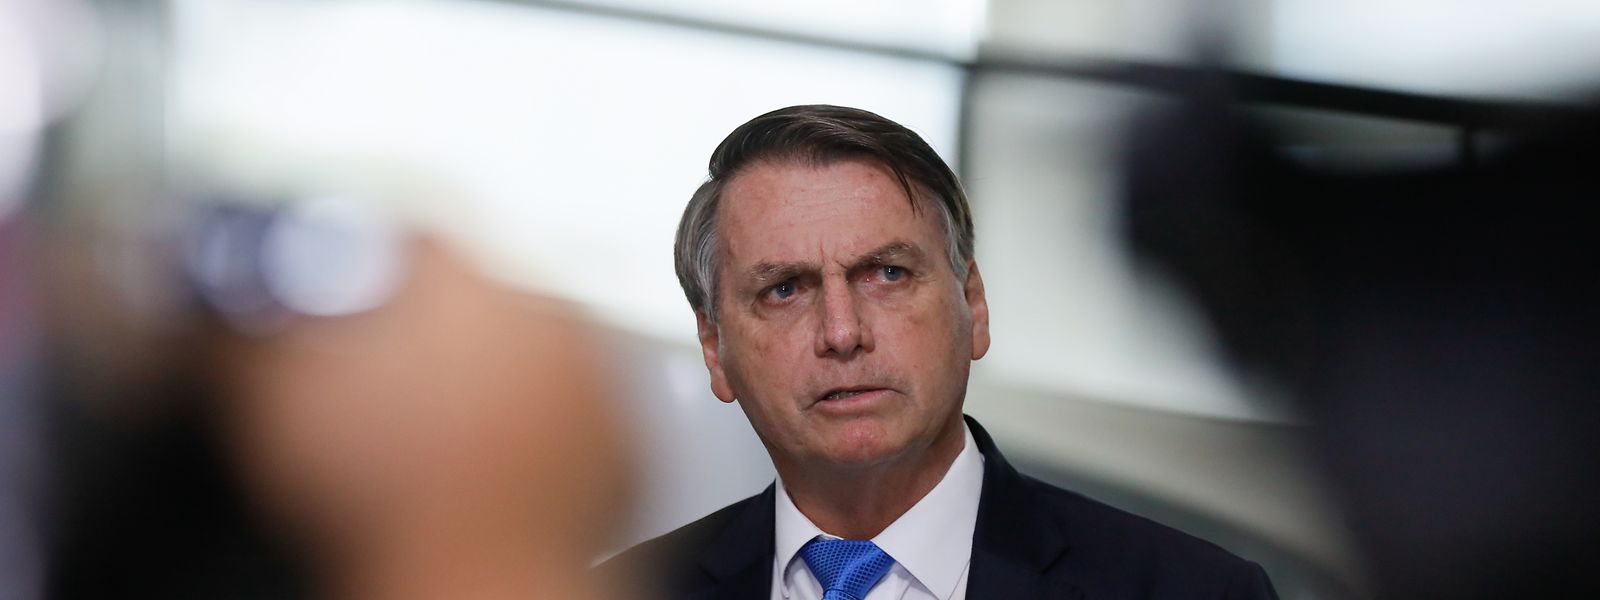 Ainda hoje, Bolsonaro insistiu nas suas críticas às urnas eletrónicas e declarou, num ato público, que quer "eleições limpas, democráticas e auditáveis".